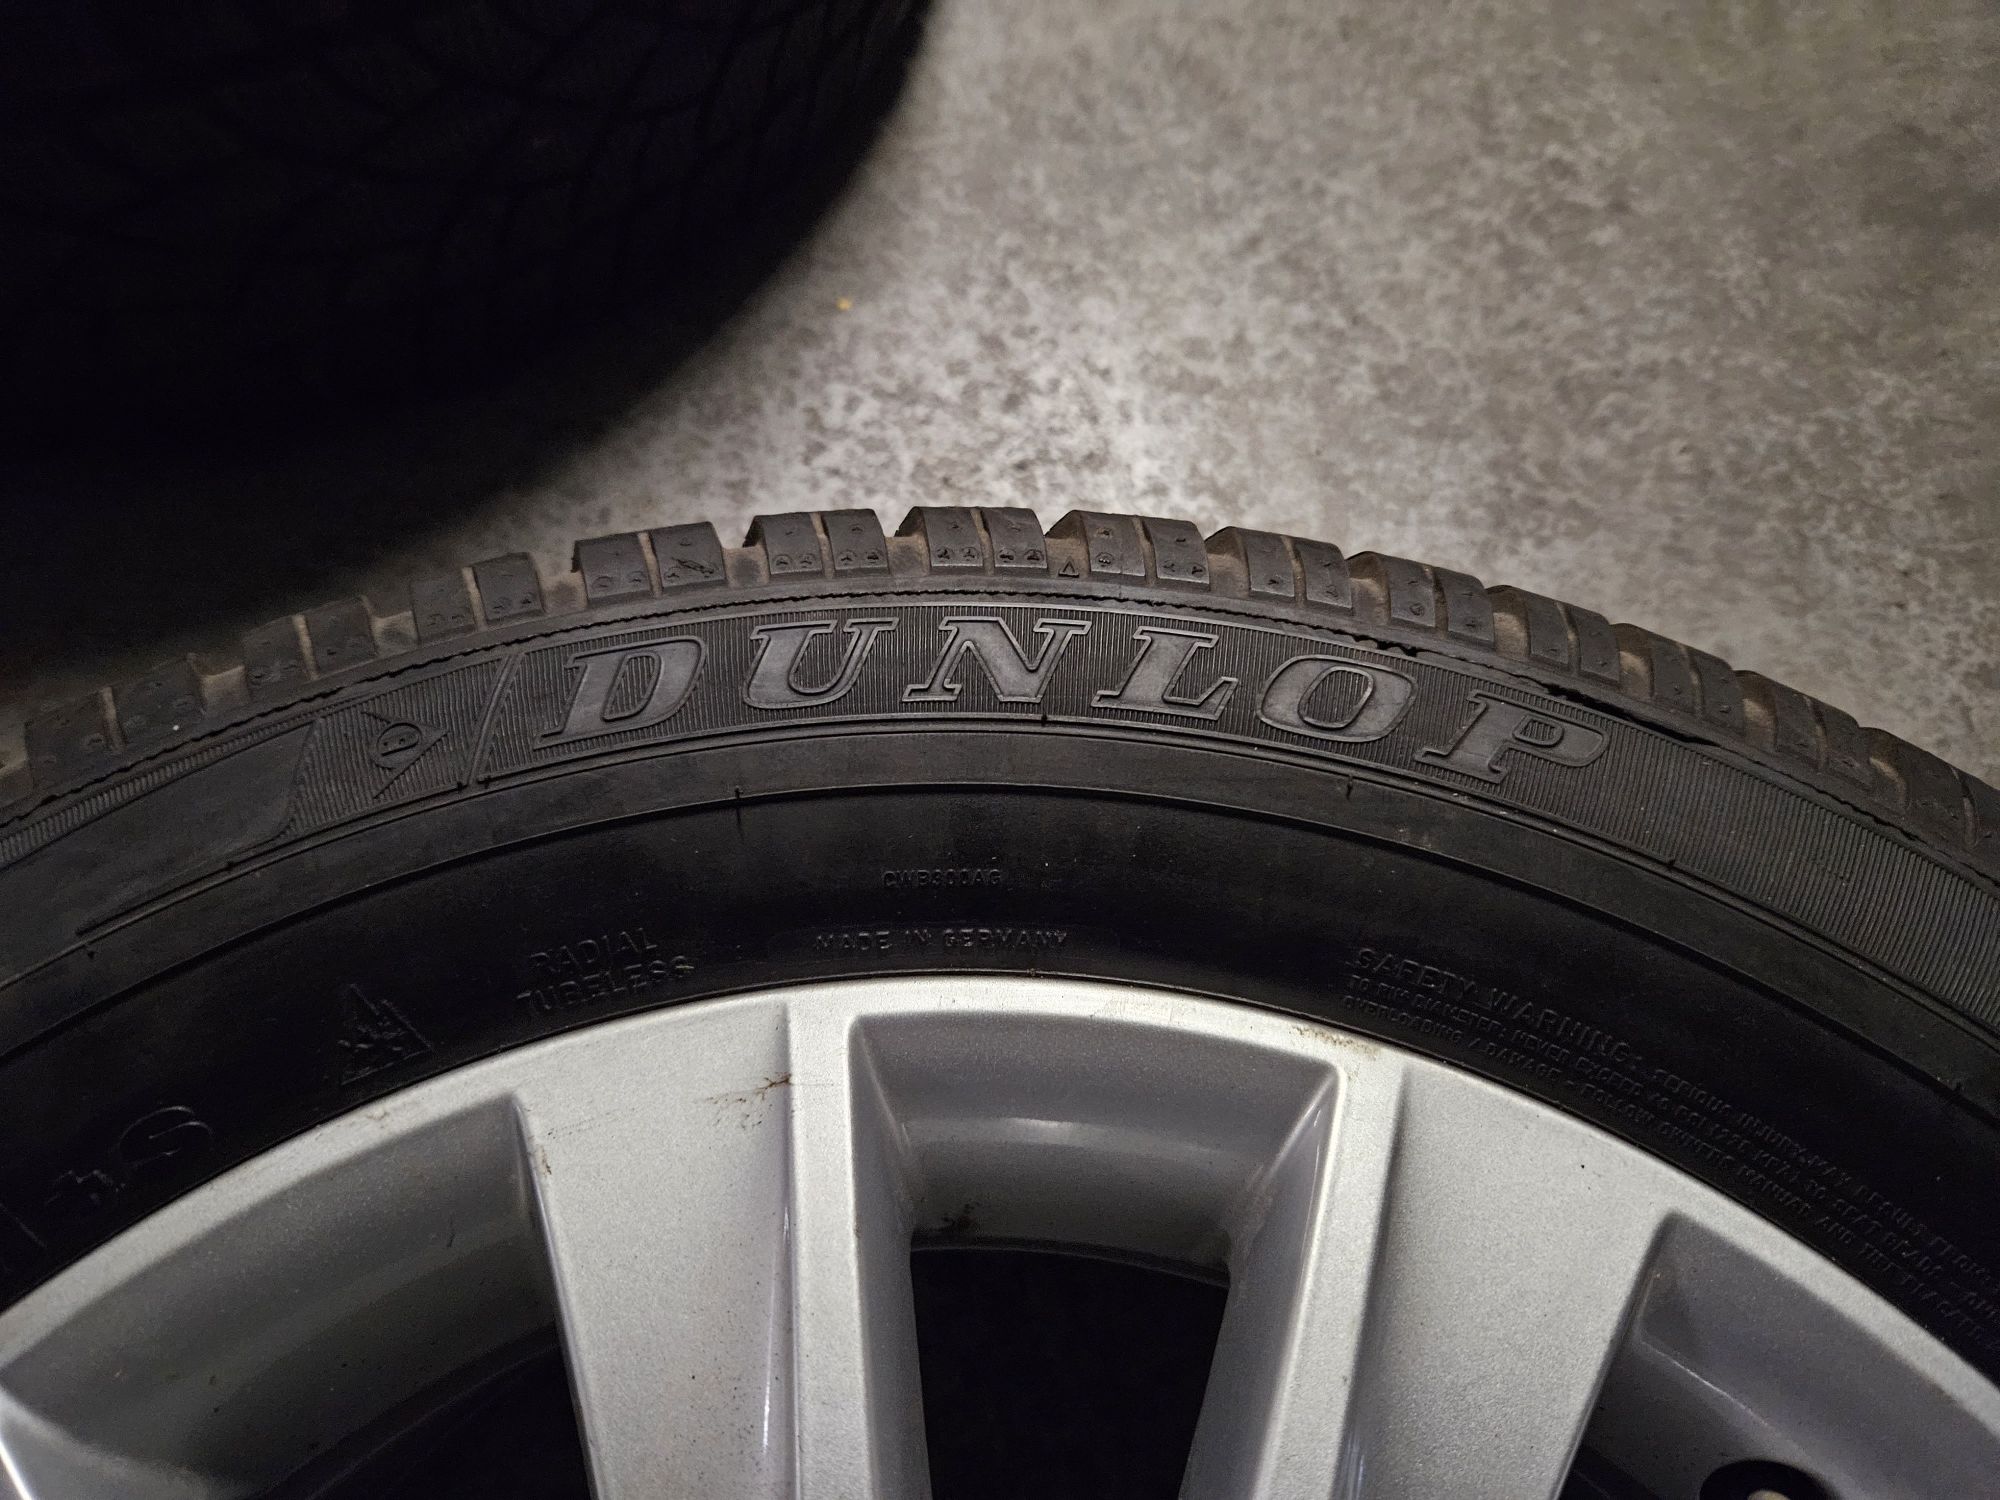 Alufelgi Volkswagen opony zimowe Dunlop 235/55/17 ET 43